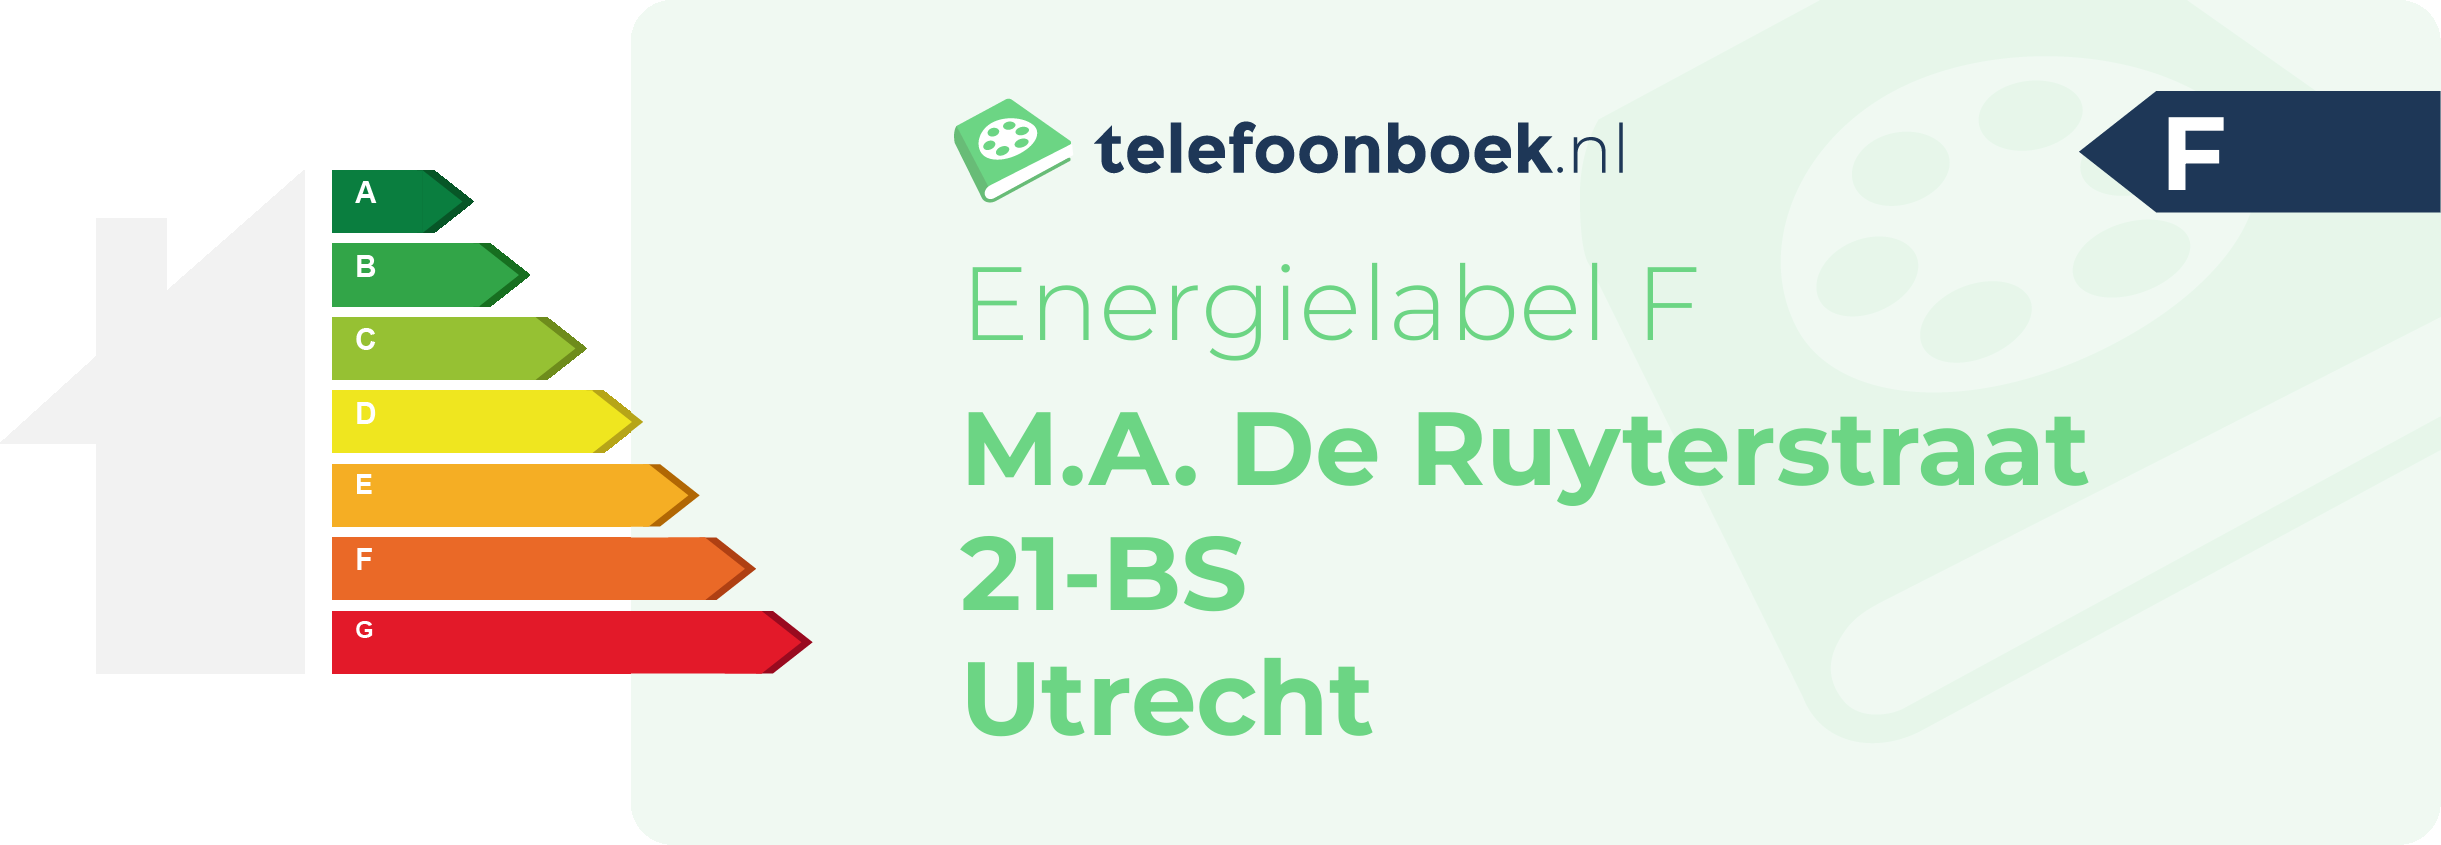 Energielabel M.A. De Ruyterstraat 21-BS Utrecht